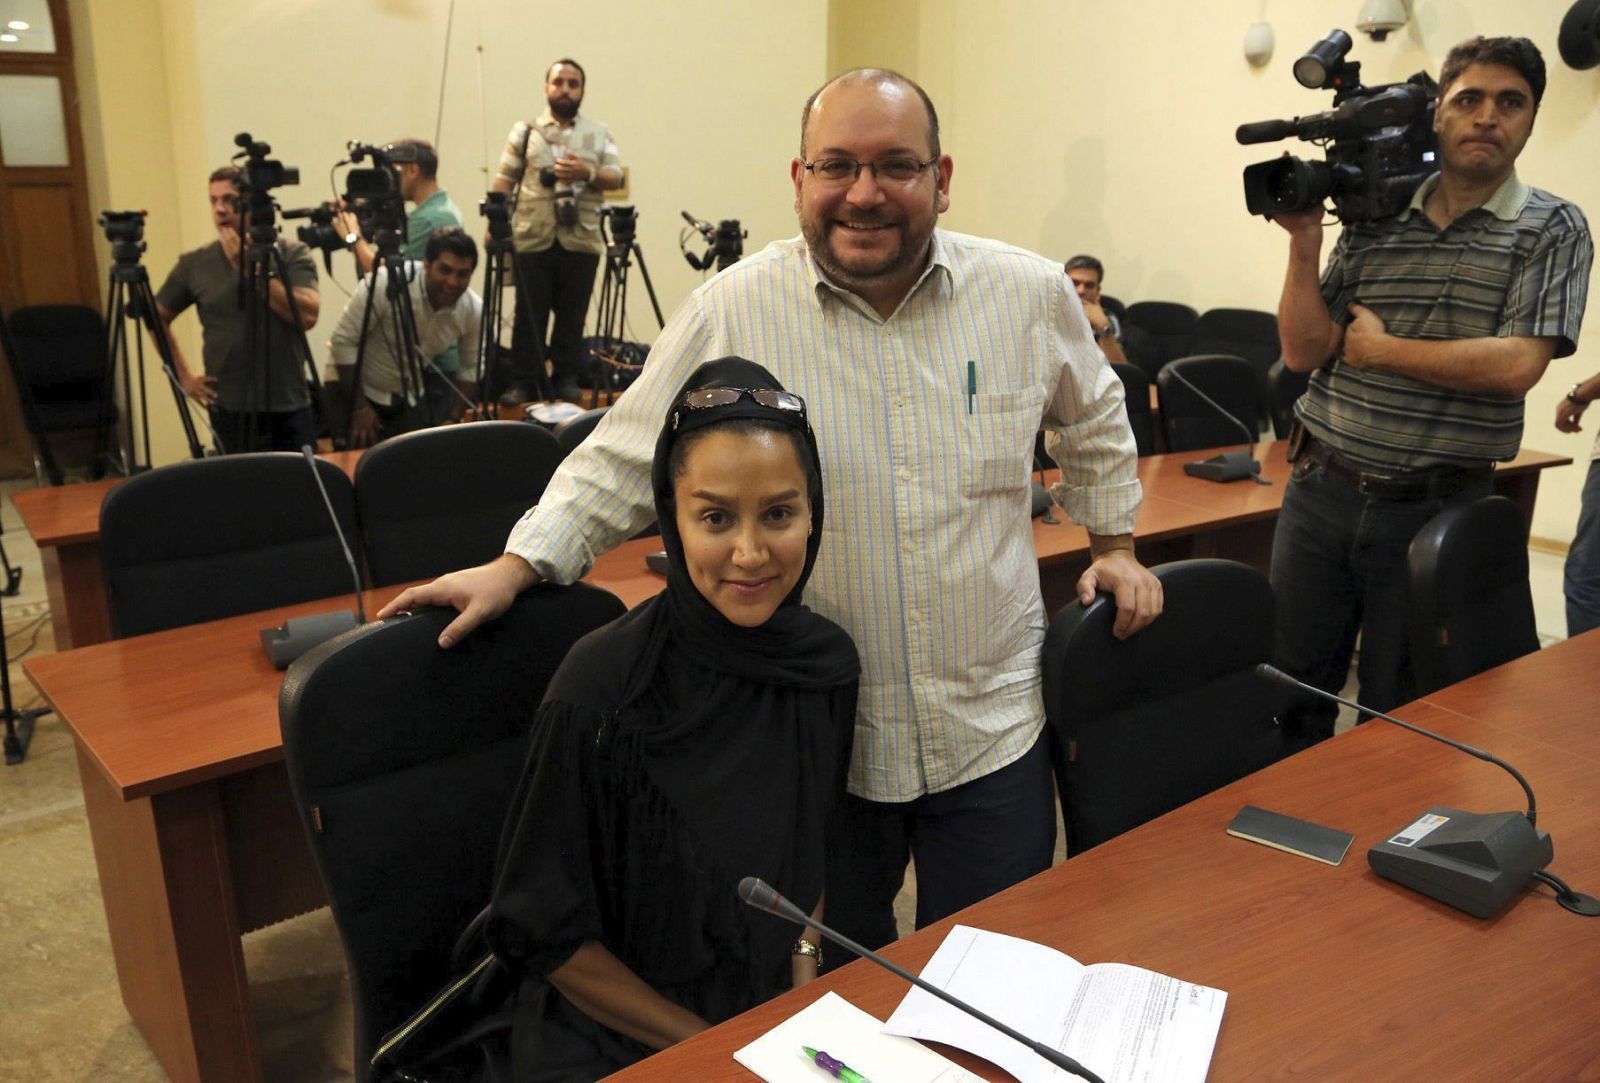 Jason Rezaian, corresponsal del Washington Post, y su mujer Yeganeh Salehi, durante una rueda de prensa en Teherán en 2013.